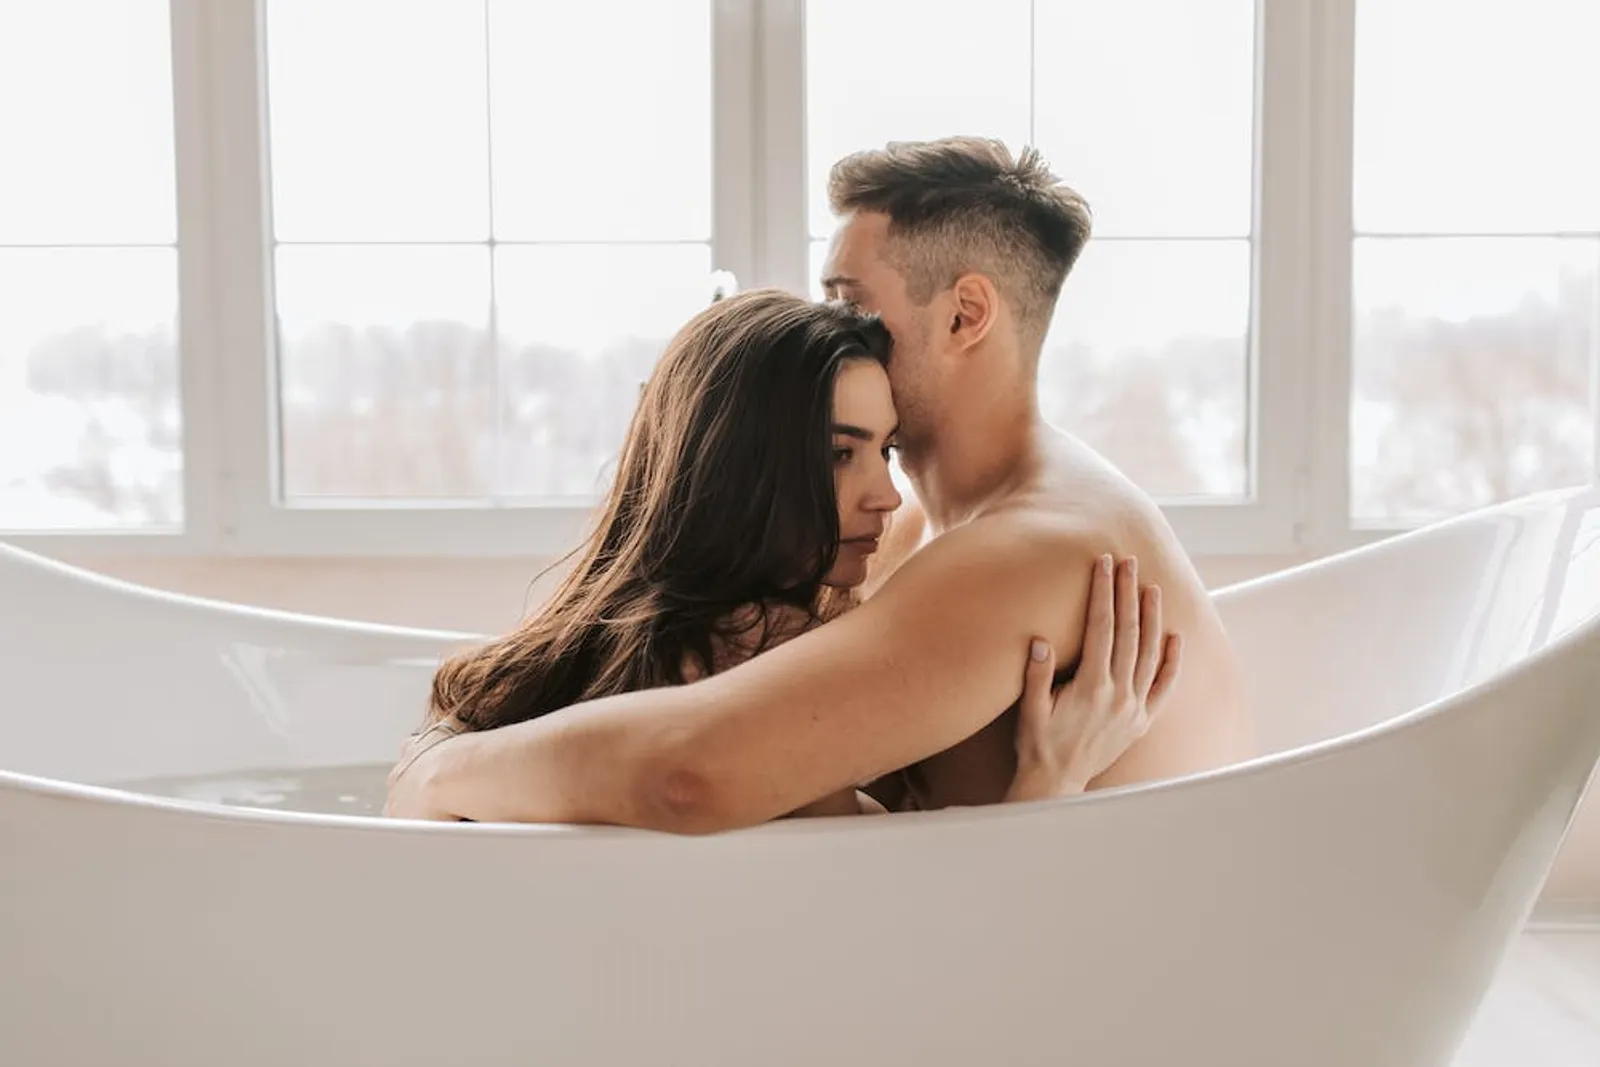 4 Posisi Seks di Bathtub yang Bikin Sesi Bercinta Makin Bergairah